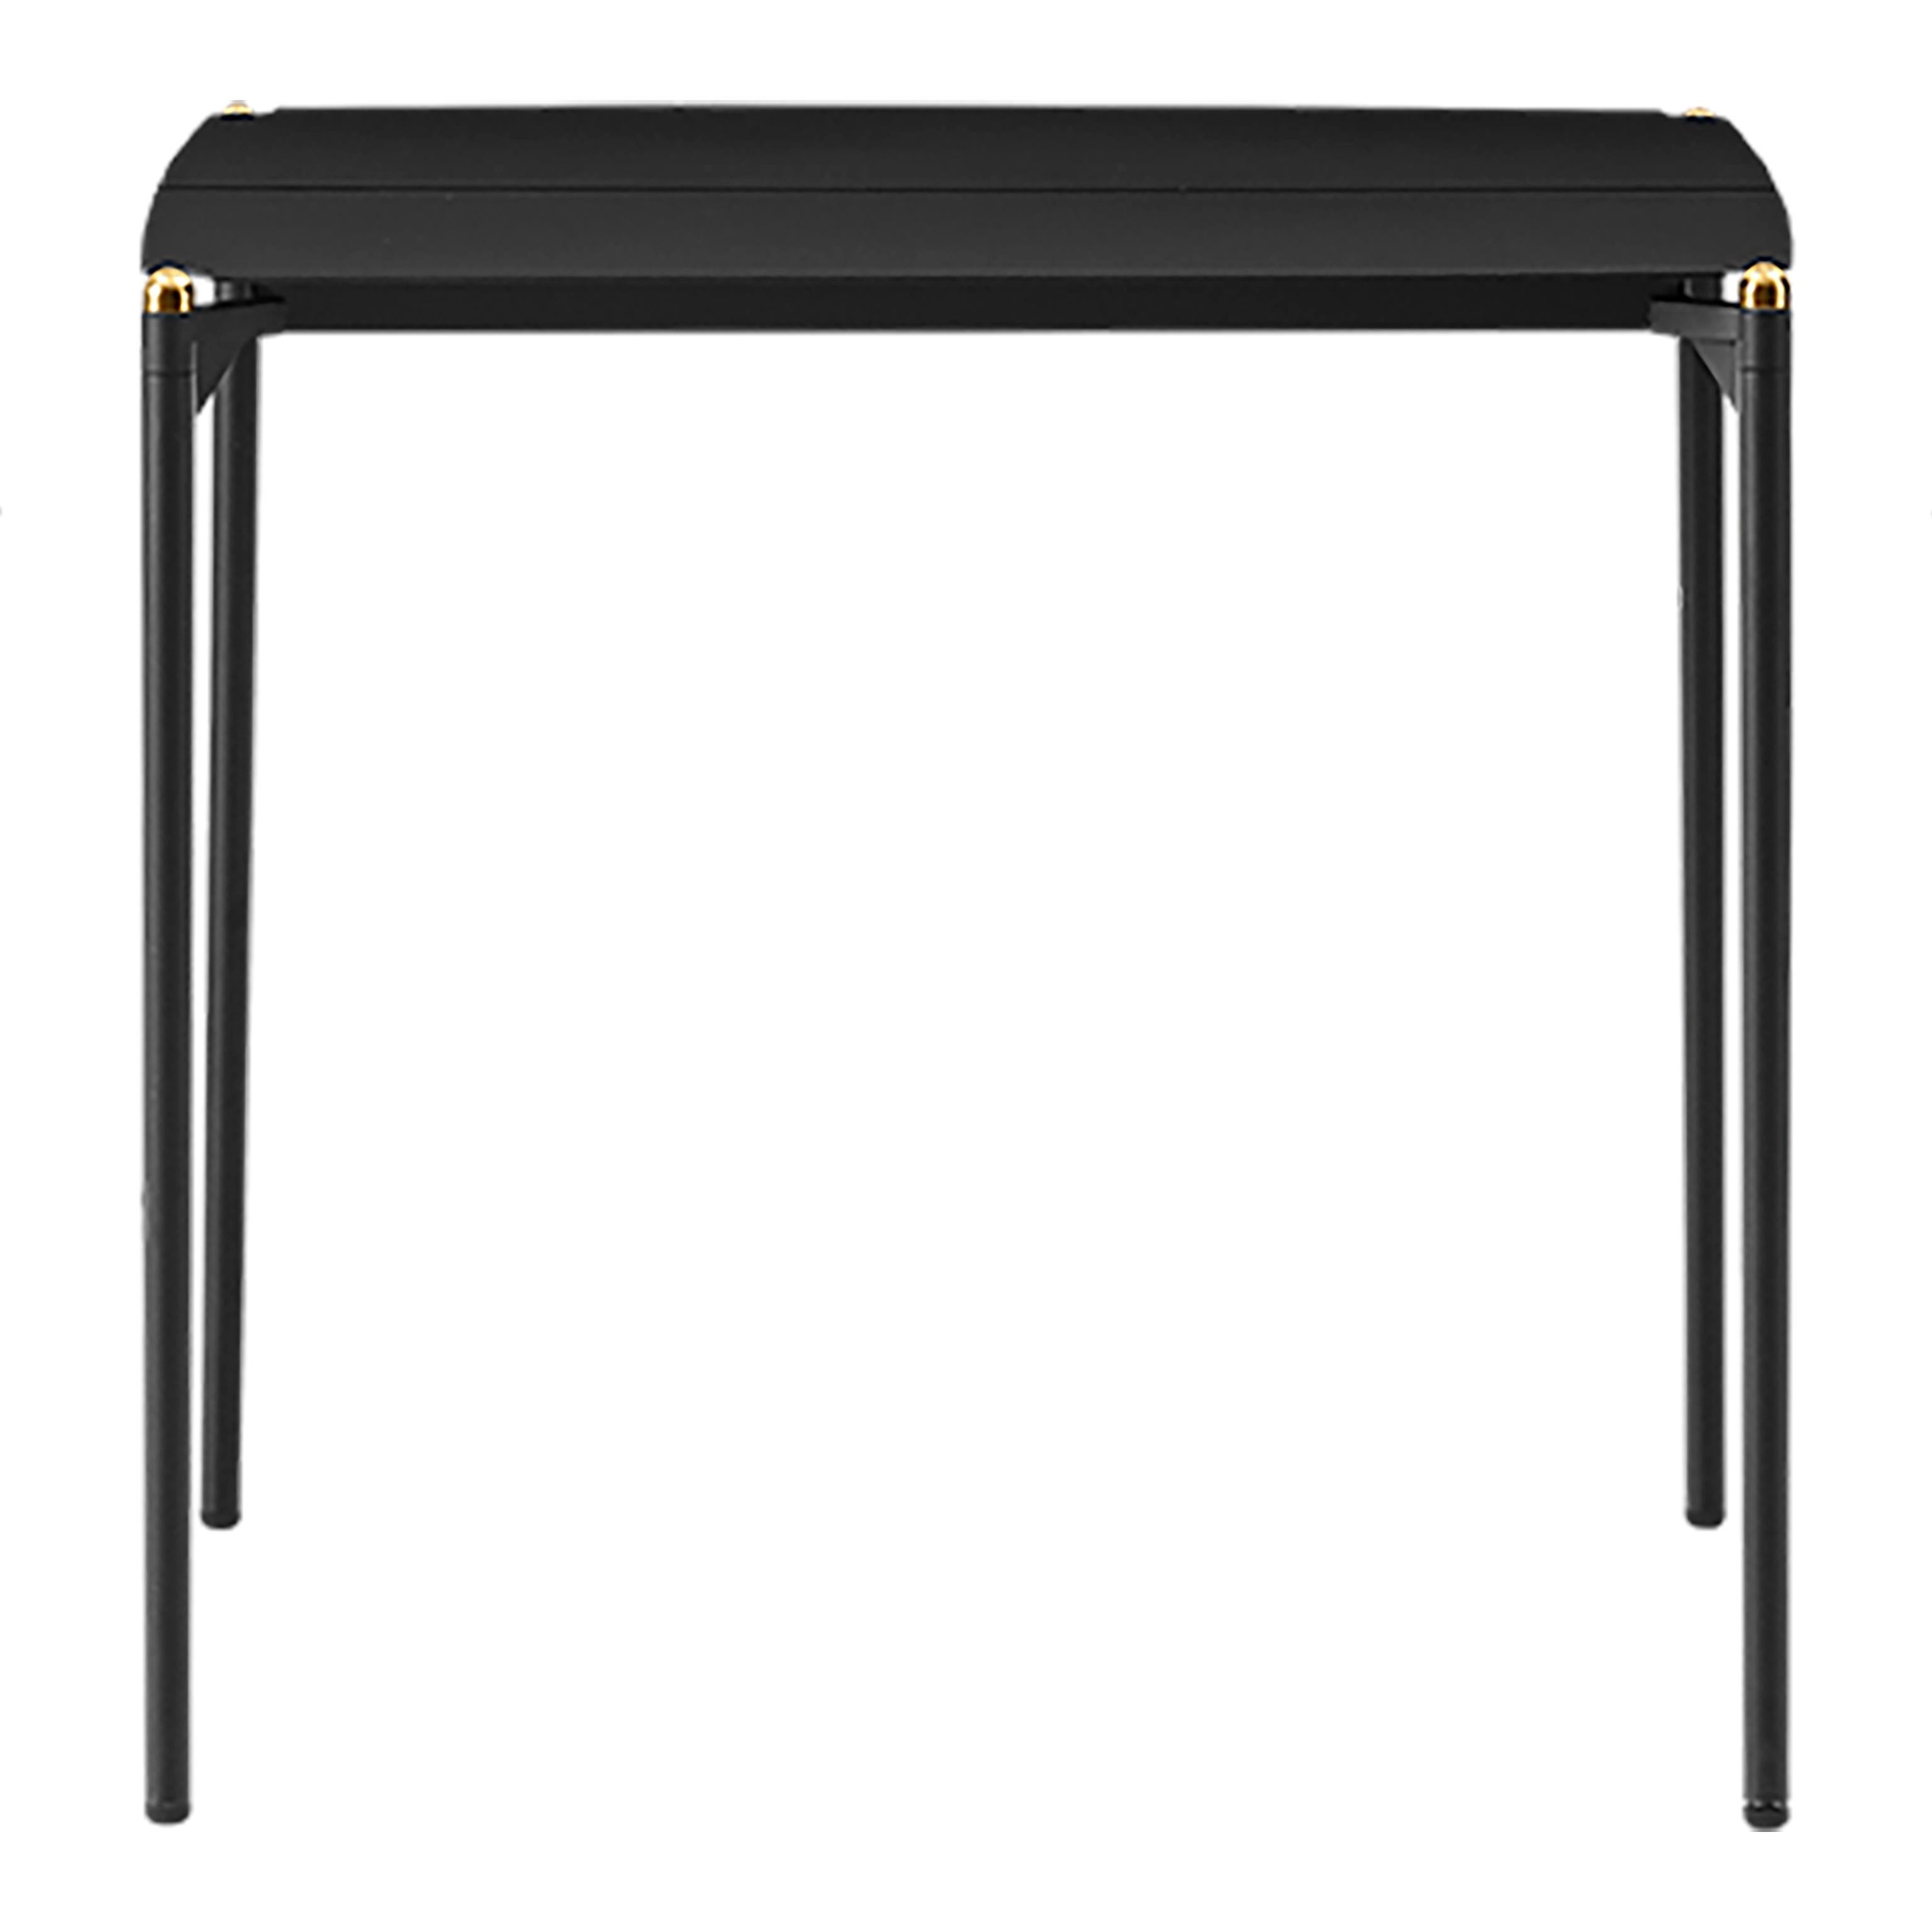 Kleiner minimalistischer Tisch in Schwarz und Gold
Abmessungen: T 80 x B 80 x H 72 cm 
MATERIALIEN: Stahl w. Matte Pulverbeschichtung, Aluminium w. Matte Pulverbeschichtung und rostfreier Stahl w. Gold-Titan-Beschichtung.
Erhältlich in den